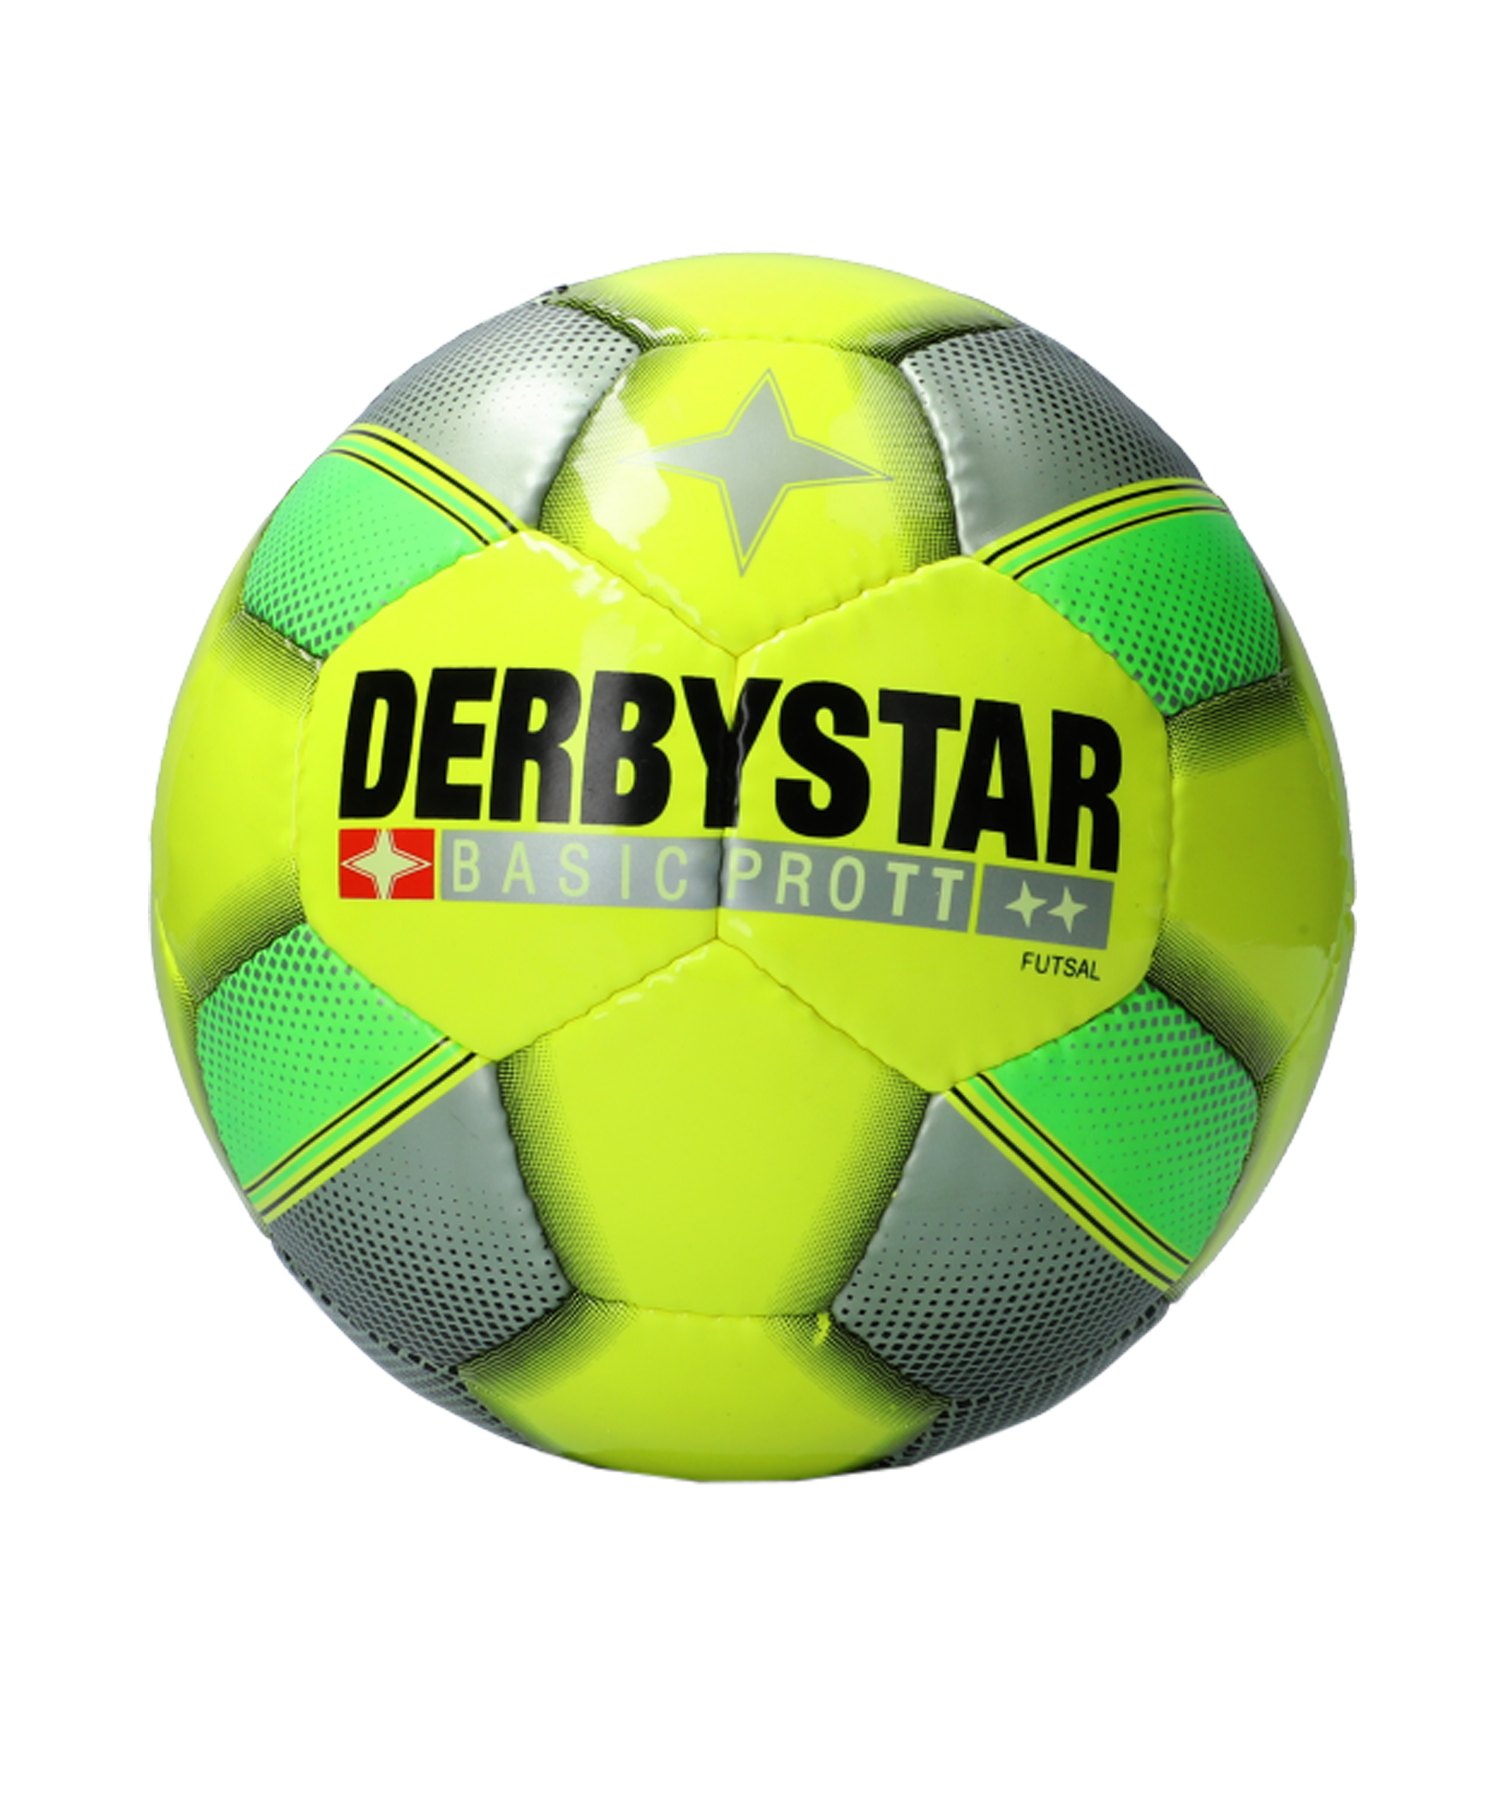 Derbystar Futsal Basic Pro TT Trainingsball F594 - gelb